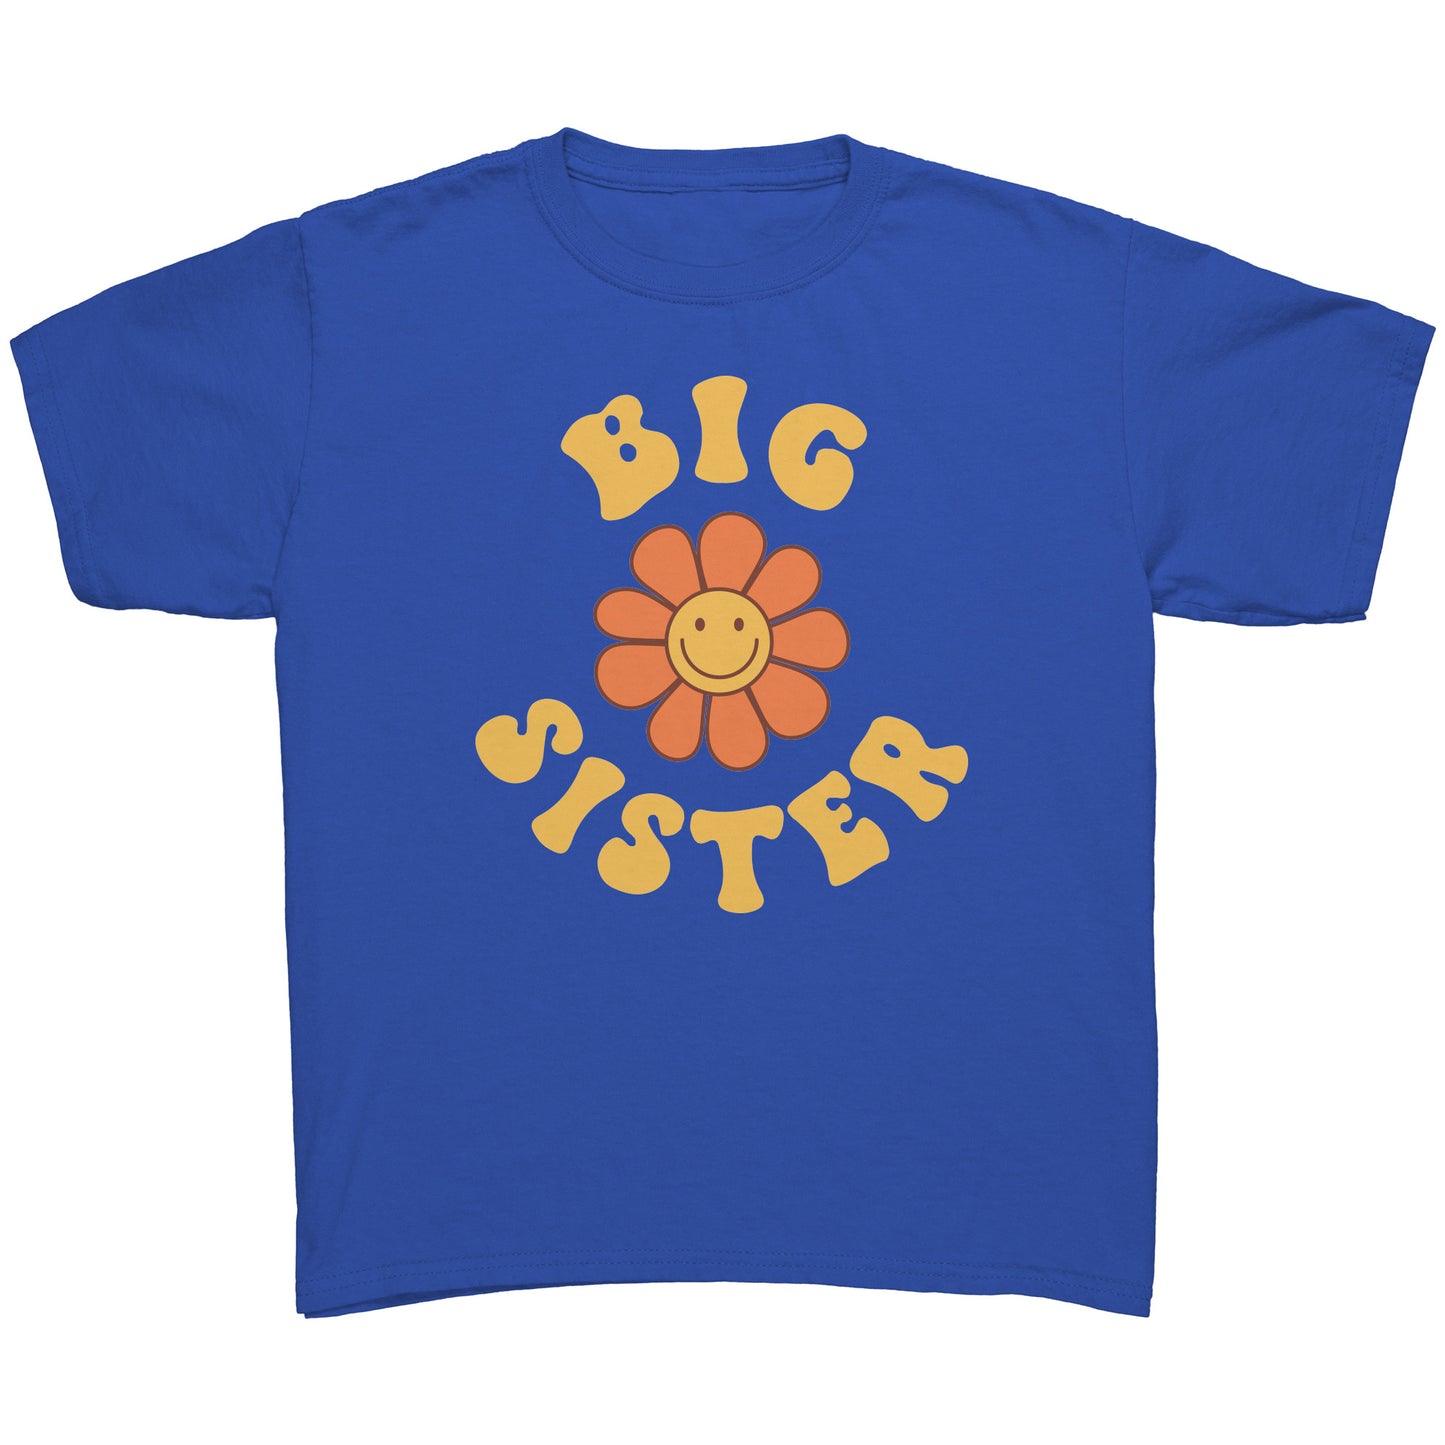 Big Sister Youth Shirt